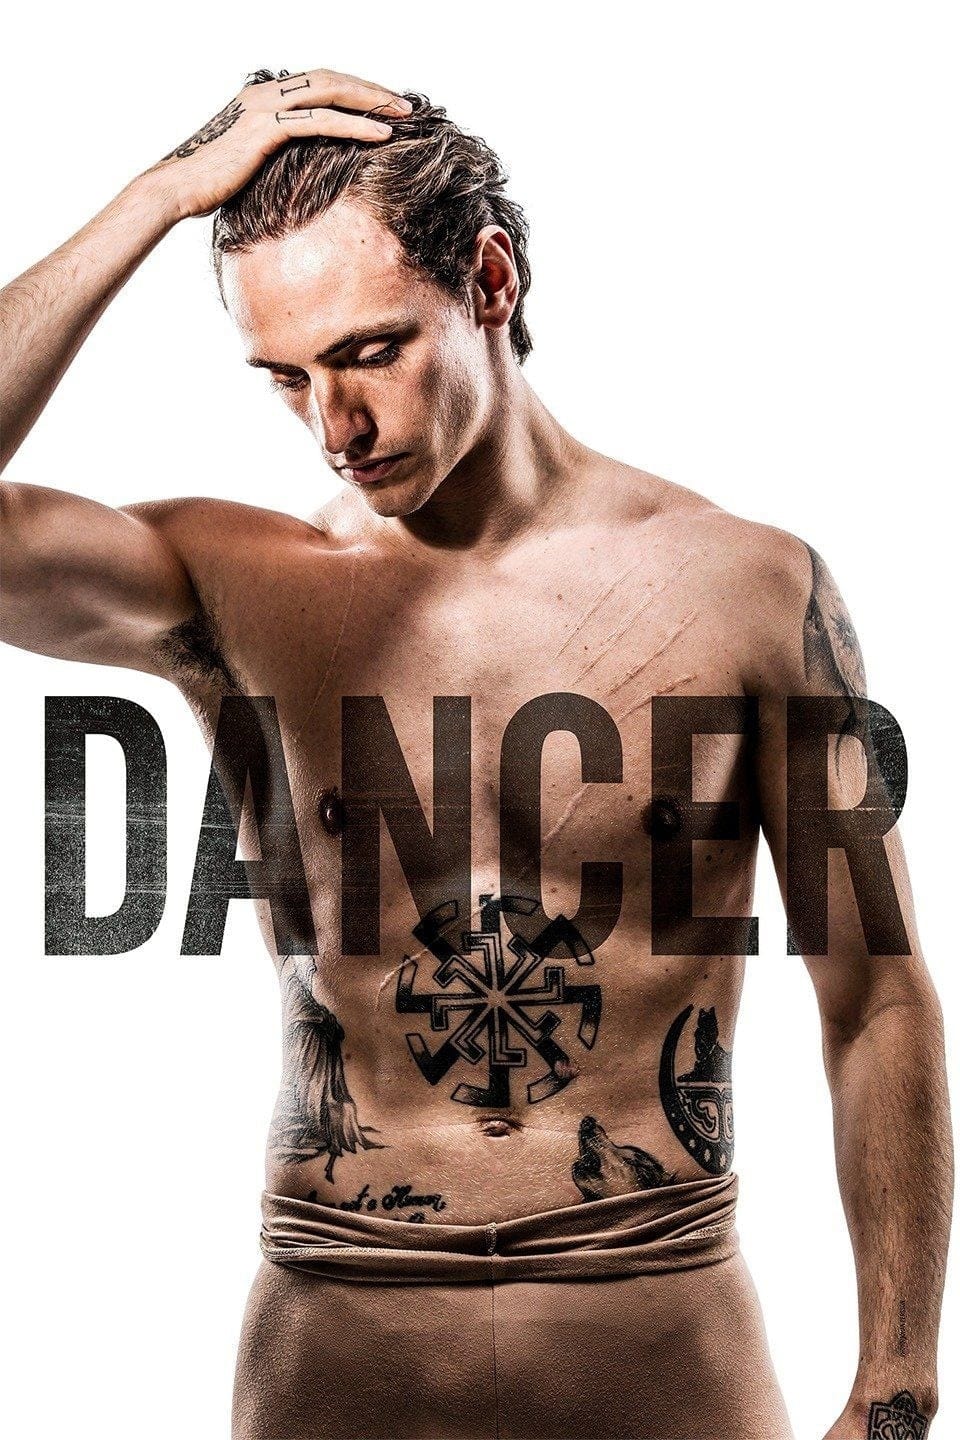 Dancer est-il disponible sur Netflix ou autre ?